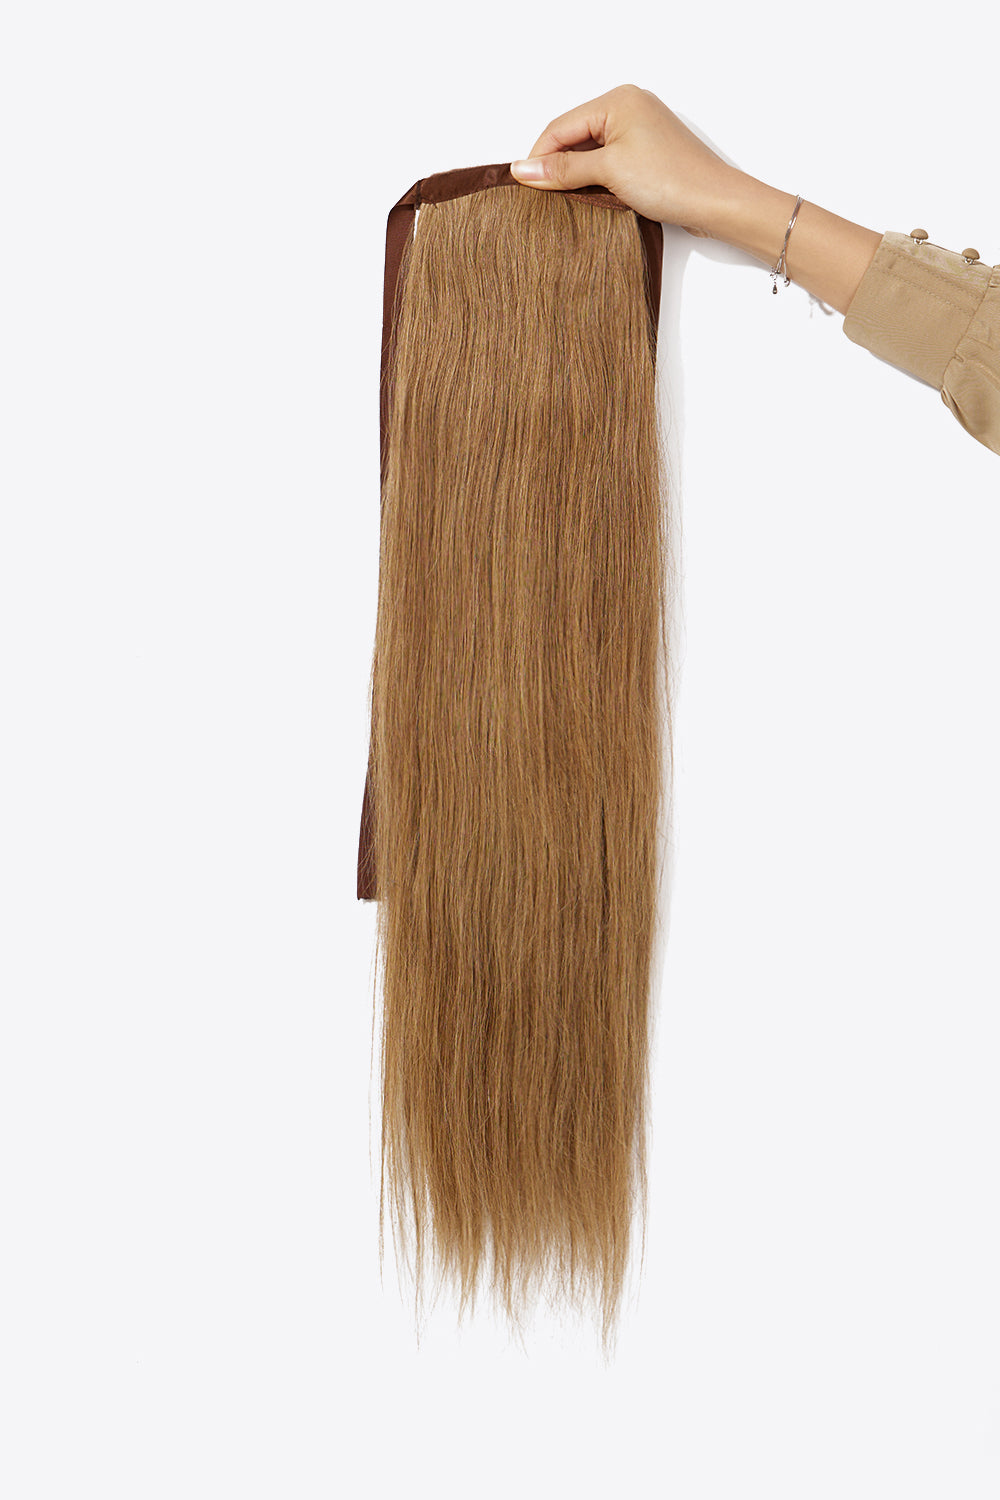 24" 130g Ponytail Long Lasting Human Hair - AllIn Computer